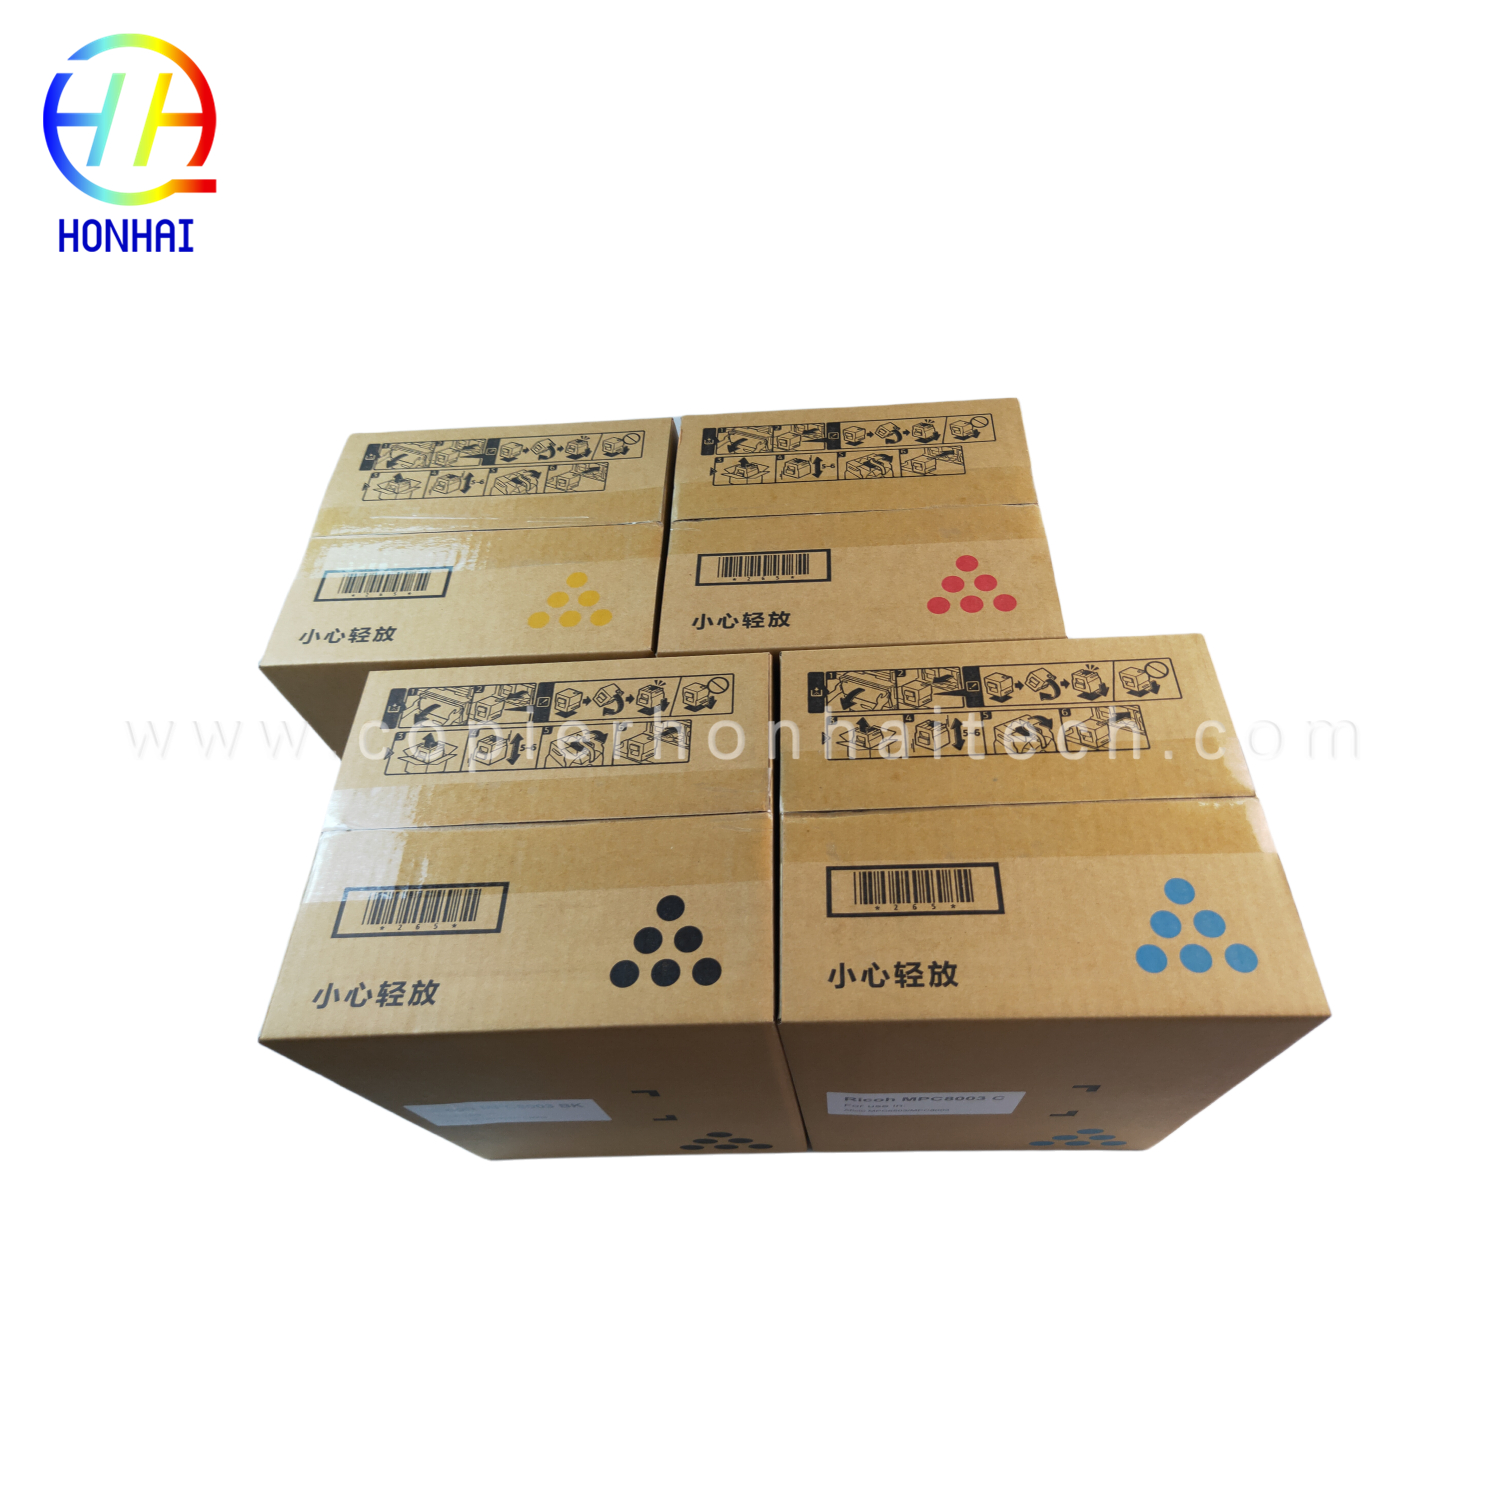 https://www.copierhonhaitech.com/toner-cartridge-japan-powder-for-ricoh-ref-842346-mp9002-mp6002-mp6002sp-mp6503-mp7502-mp7502sp-mp7503-mp9002sp-product/3-mp-90